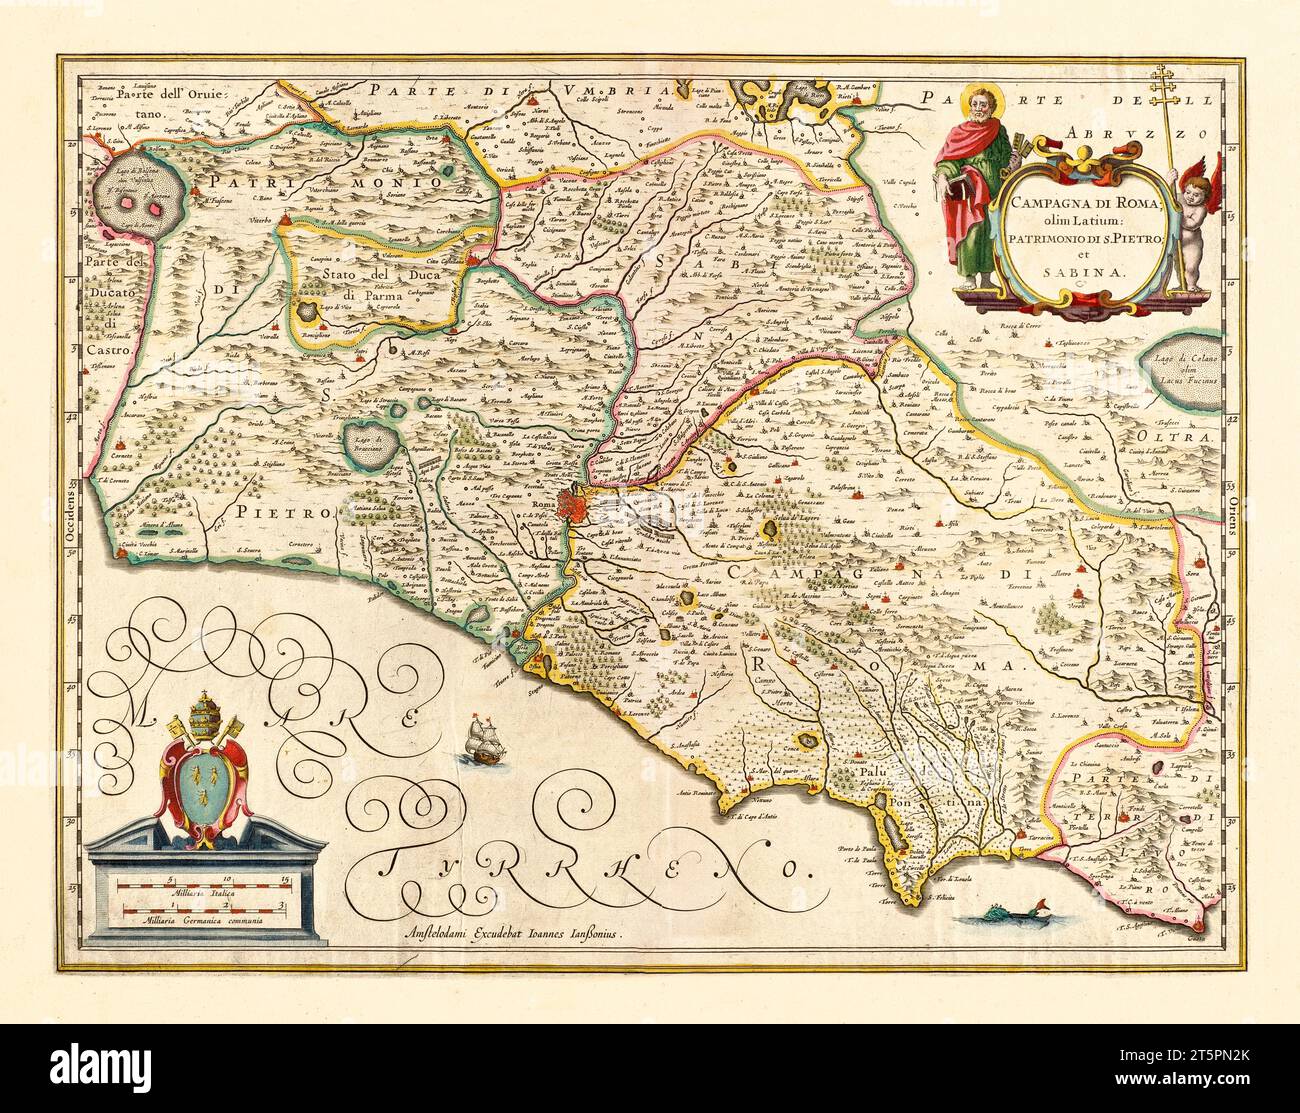 Ancienne carte de la région du Latium, Italie. Par Jansson, publ. env. 1645 Banque D'Images